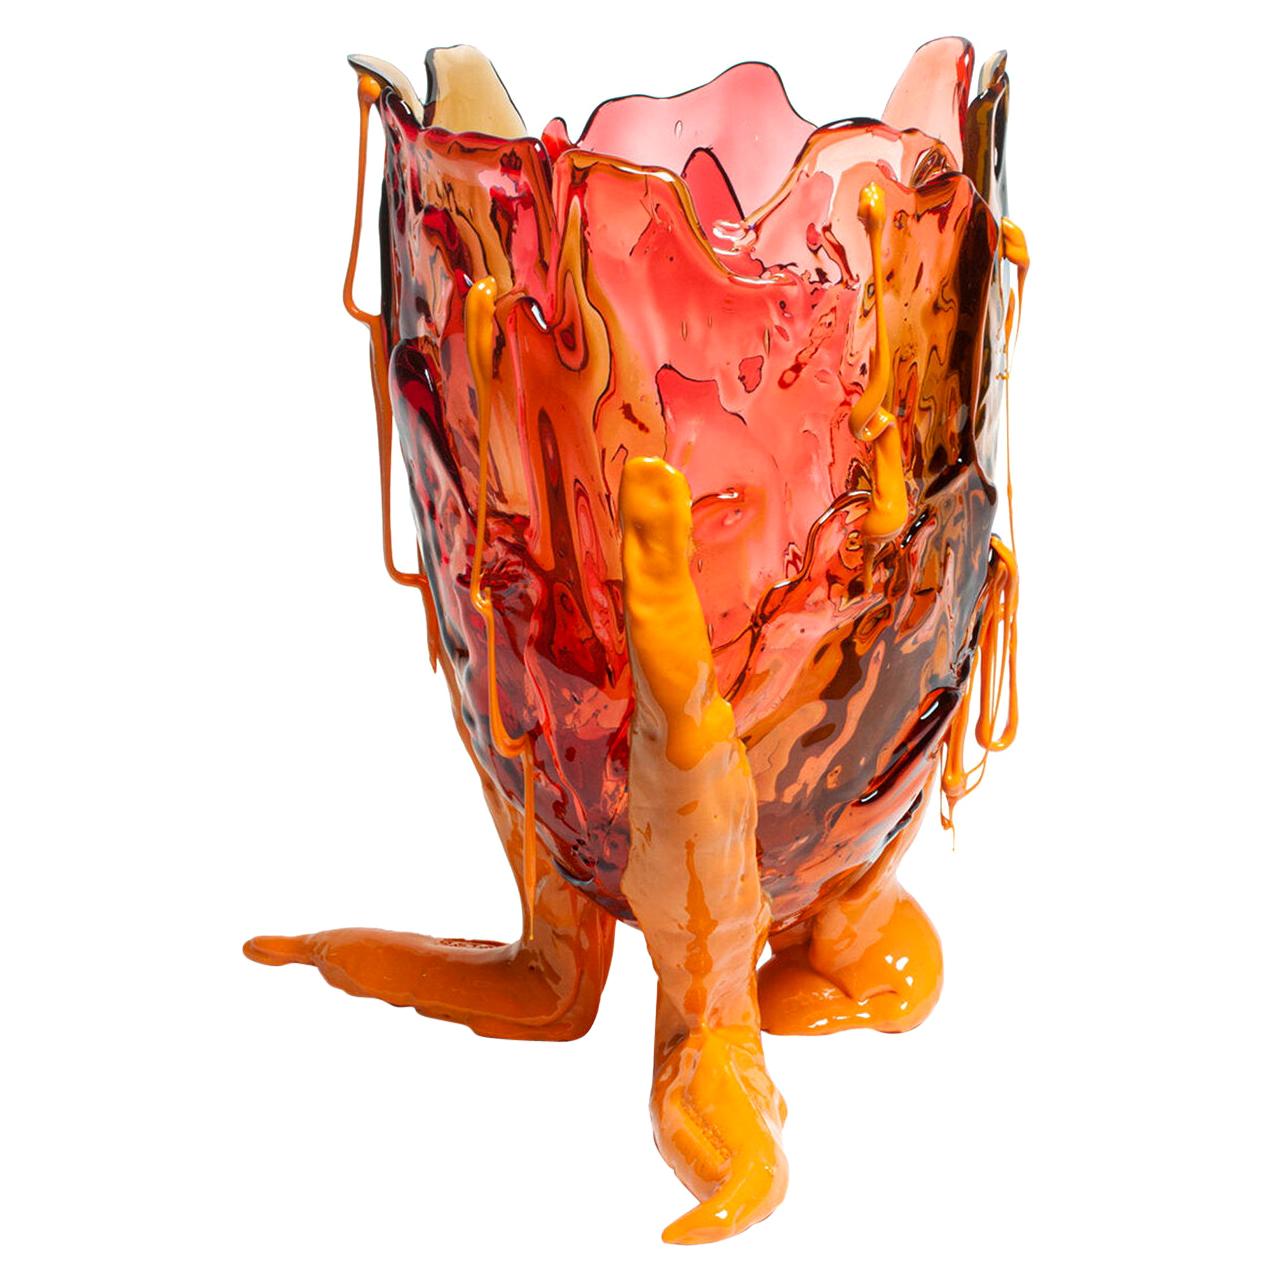 Grand vase rouge extracolore et transparent de Gaetano Pesce